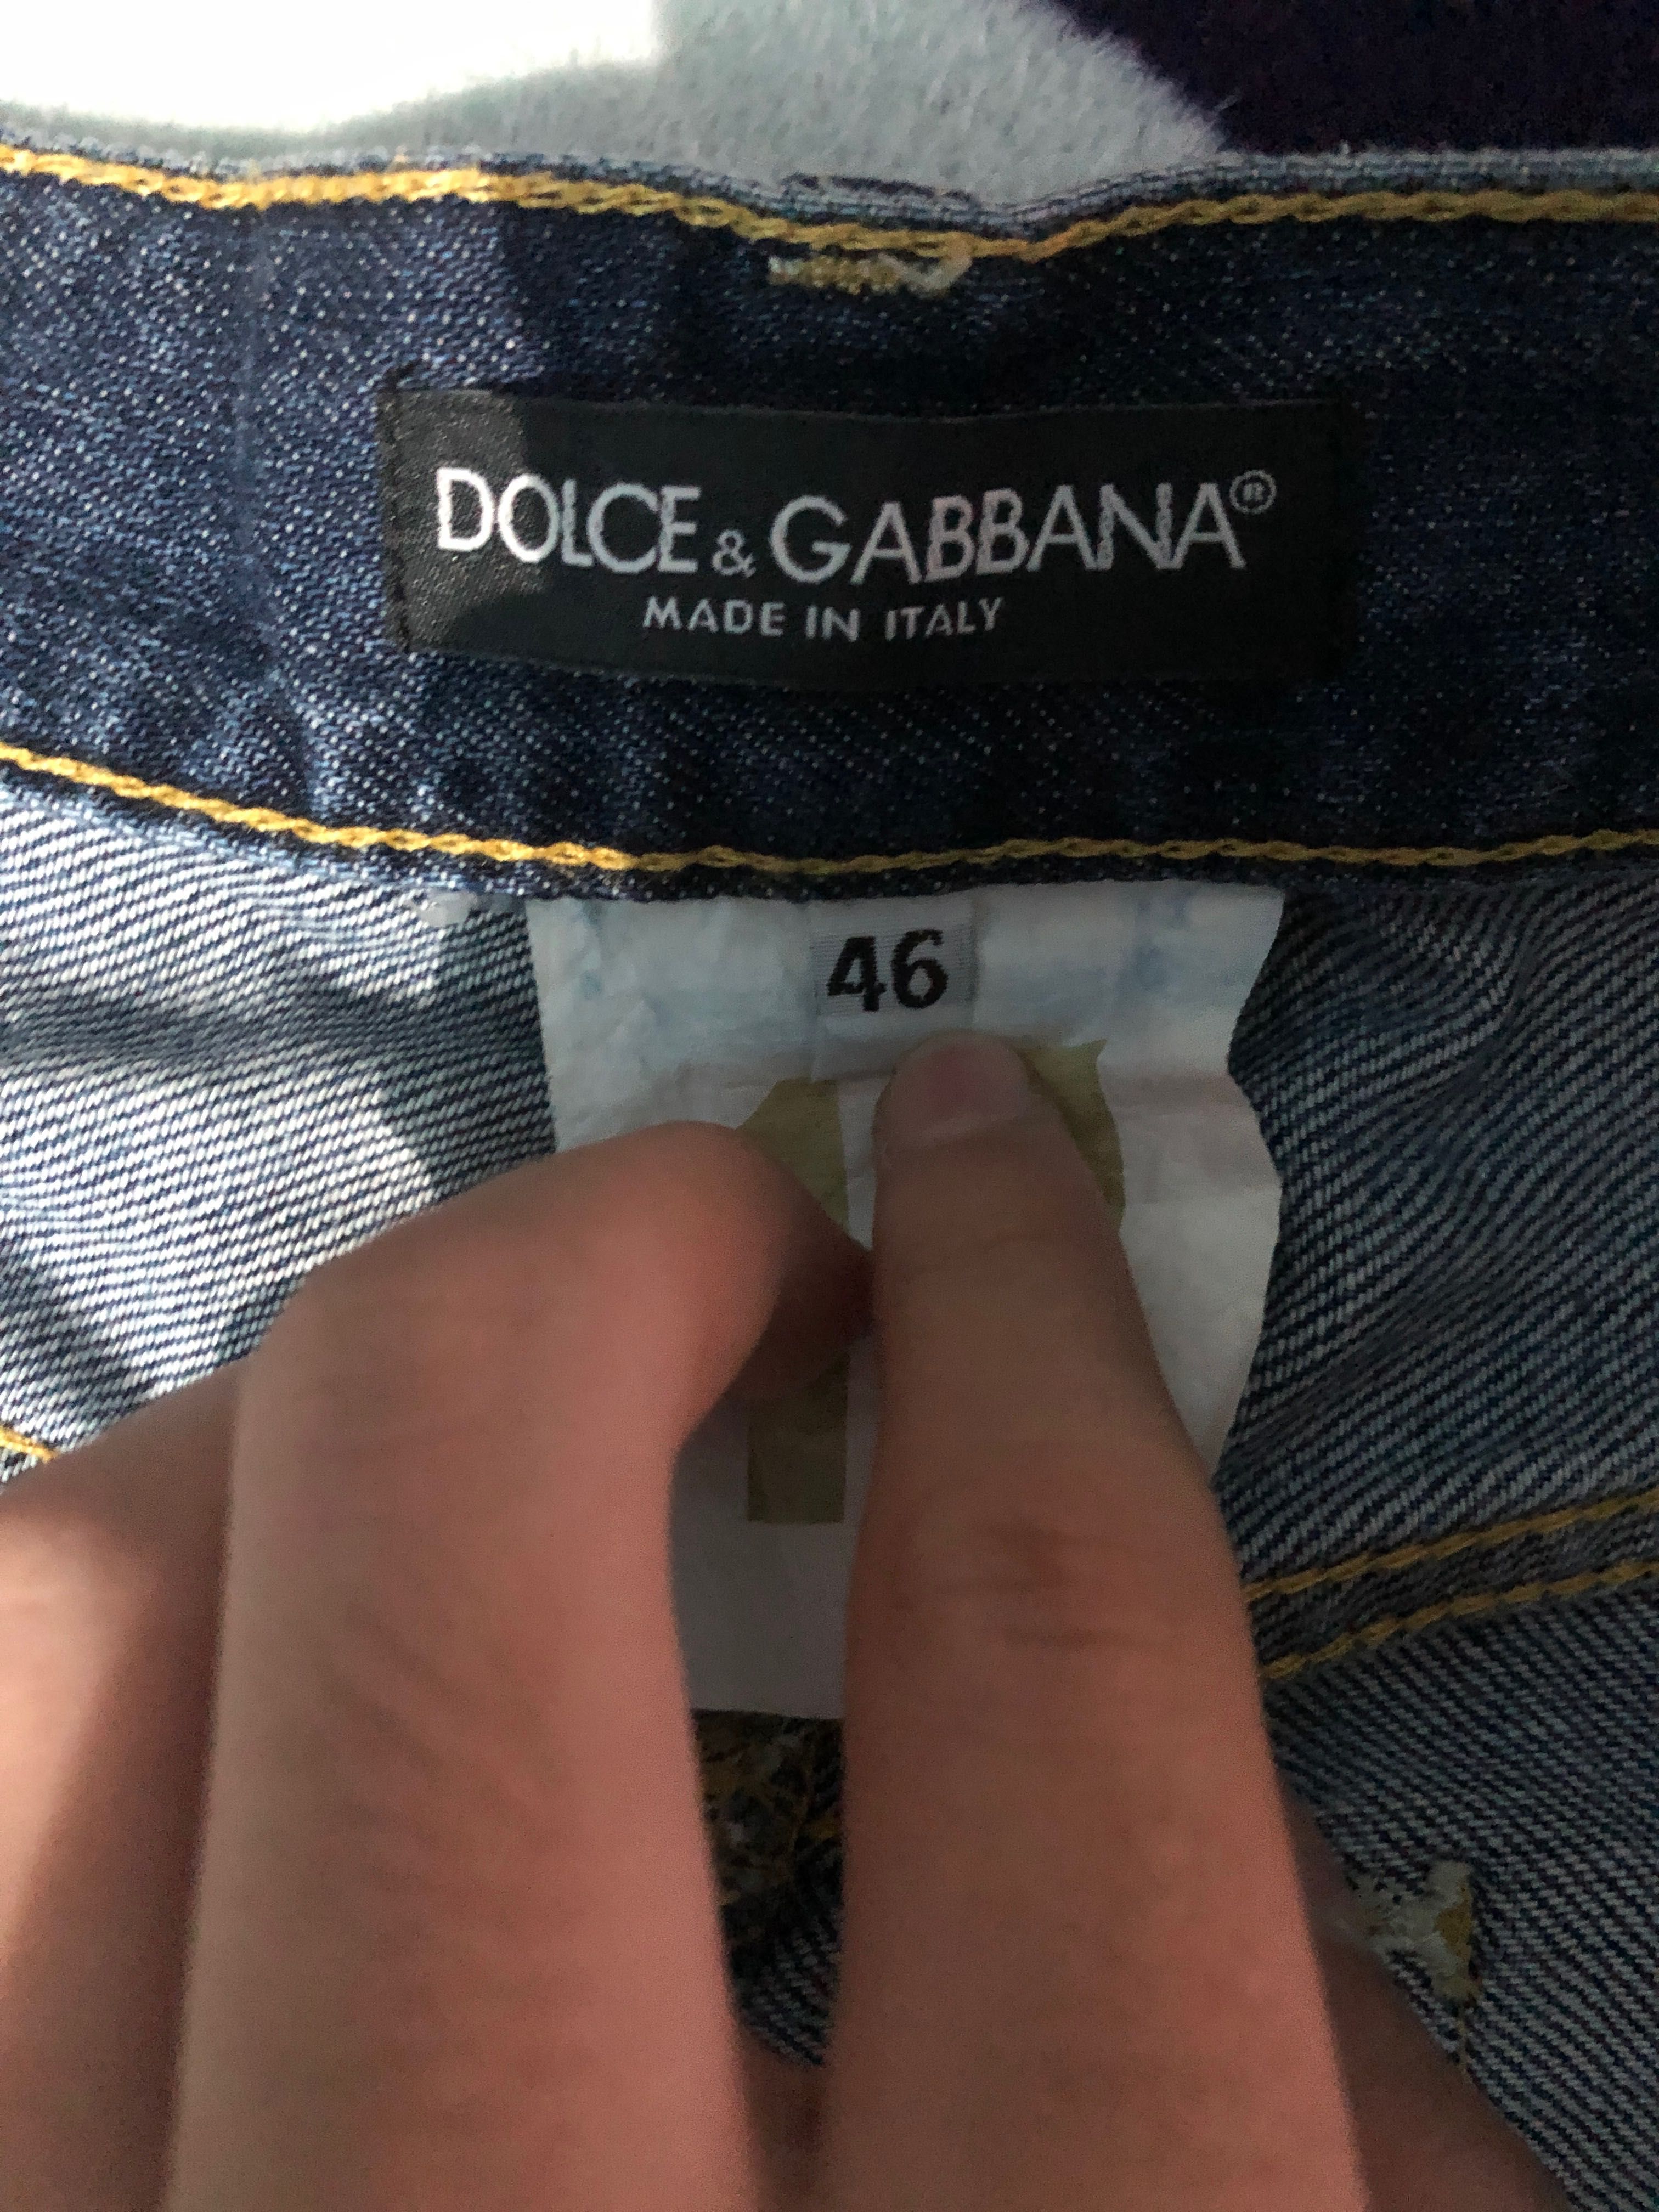 Blugi dolce Gabbana